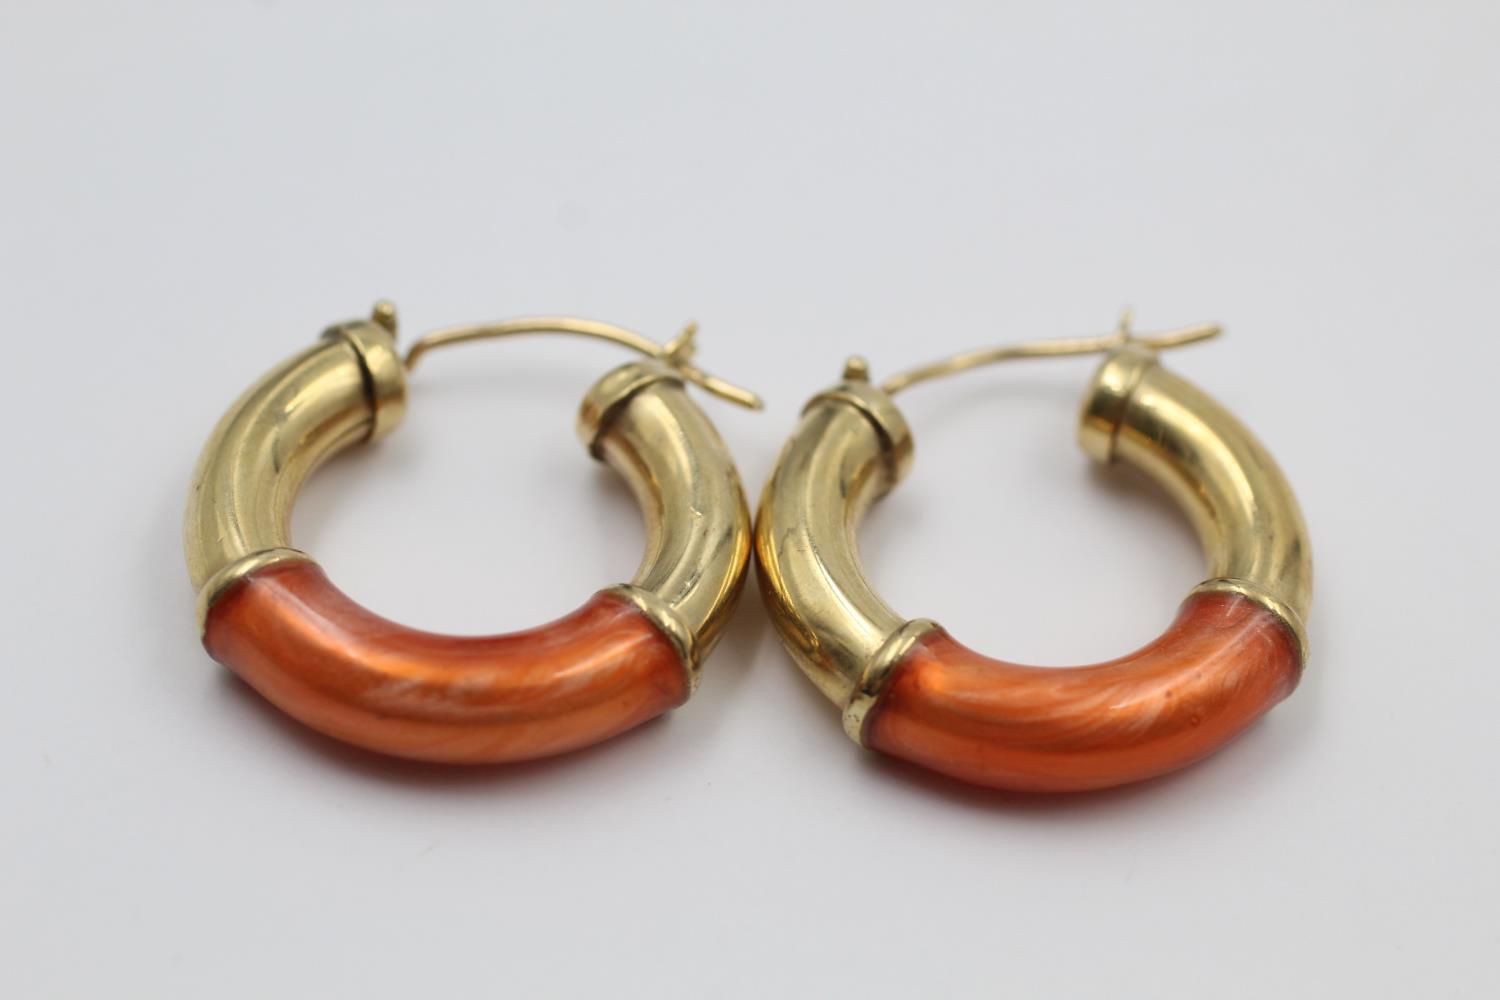 9ct gold enamel hoop earrings 4.1 grams gross